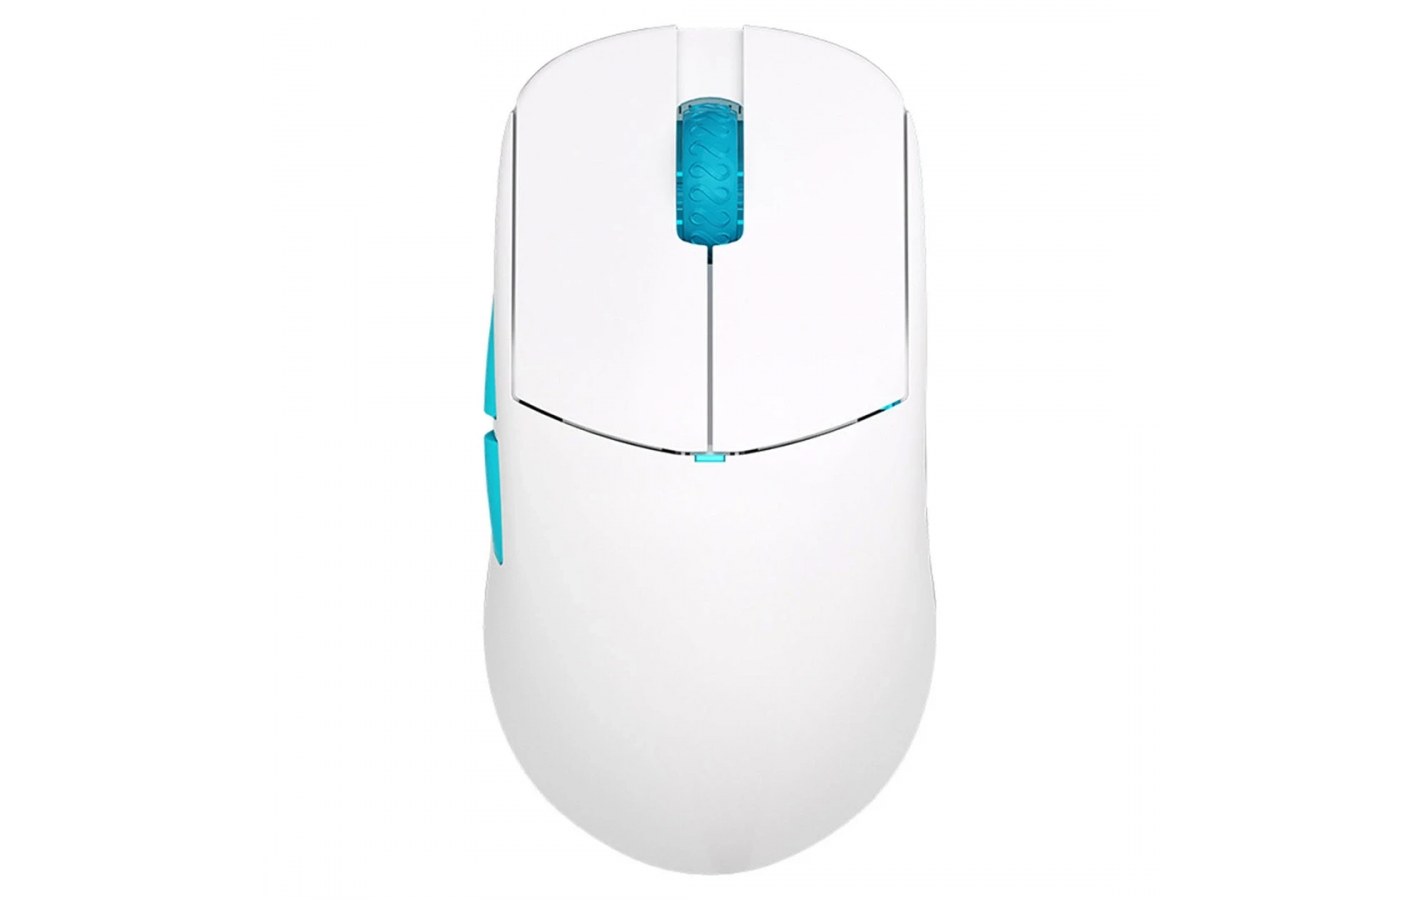 Безпровідна ігрова мишка Lamzu Atlantis OG V2 Pro - Polar White (підтримує 4К) PixArt PAW 3395